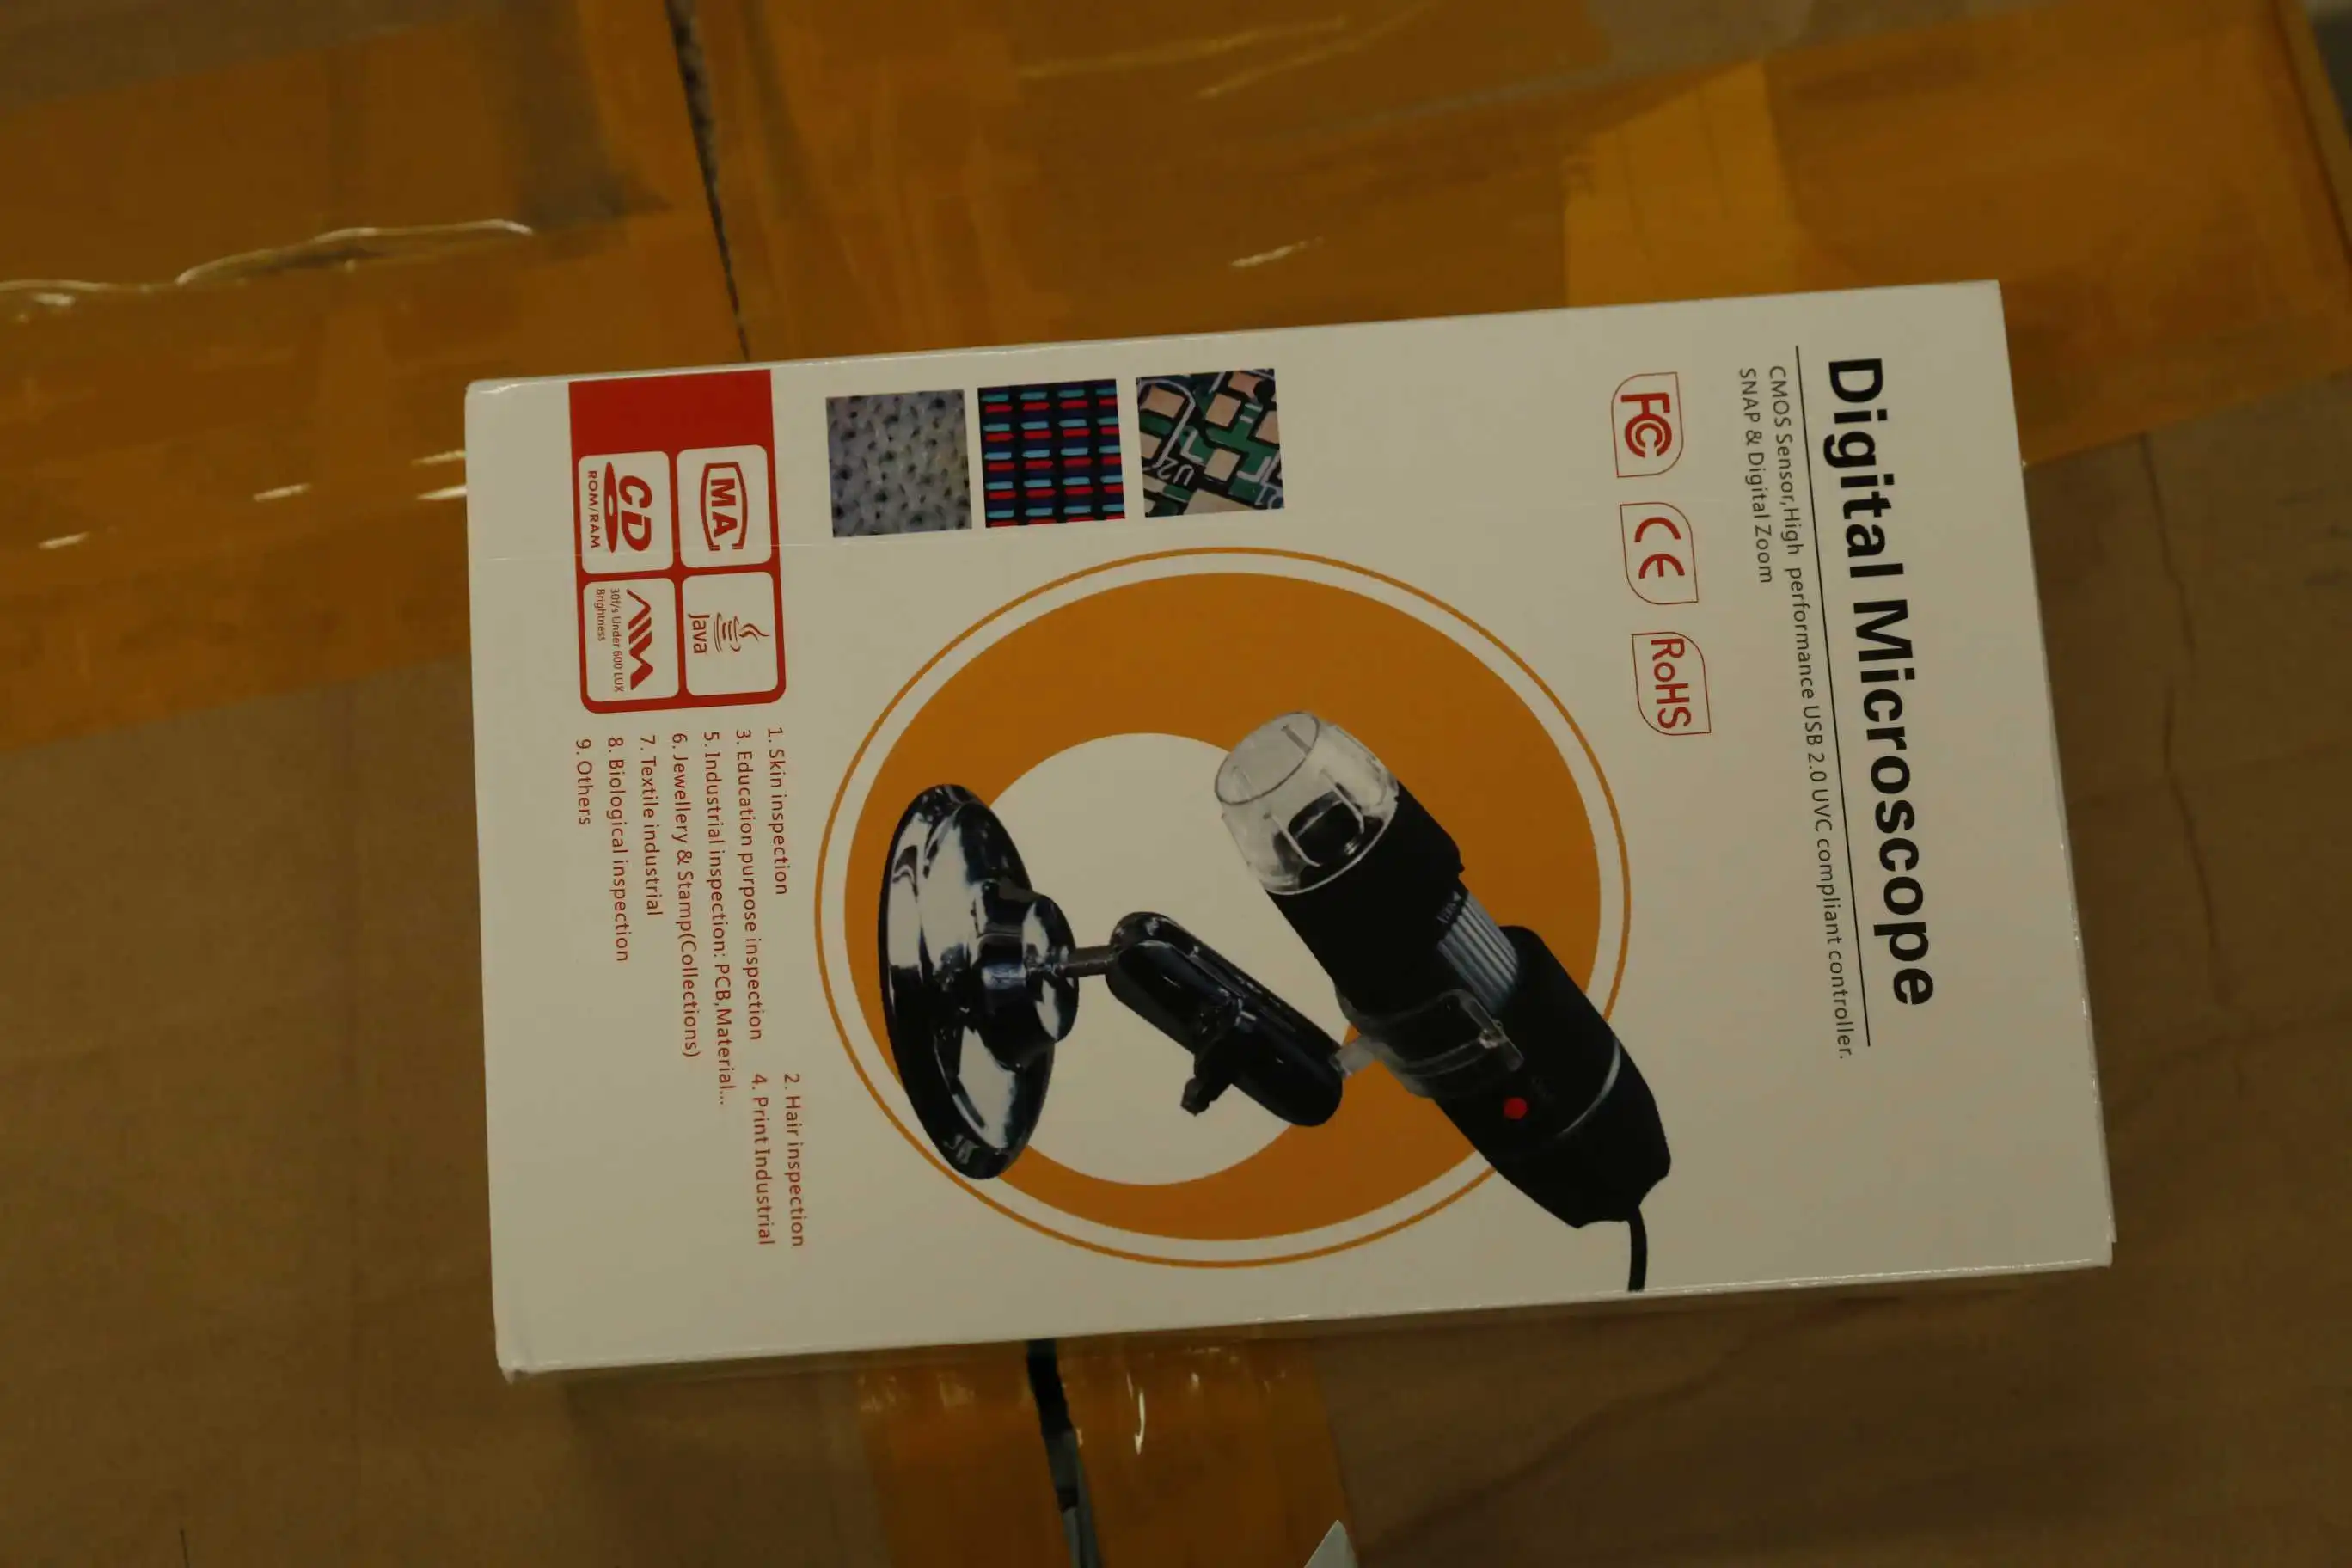 50X до 500X USB светодиодный цифровой электронный микроскоп Лупа камера Черный практичный камера микроскоп Эндоскоп лупа